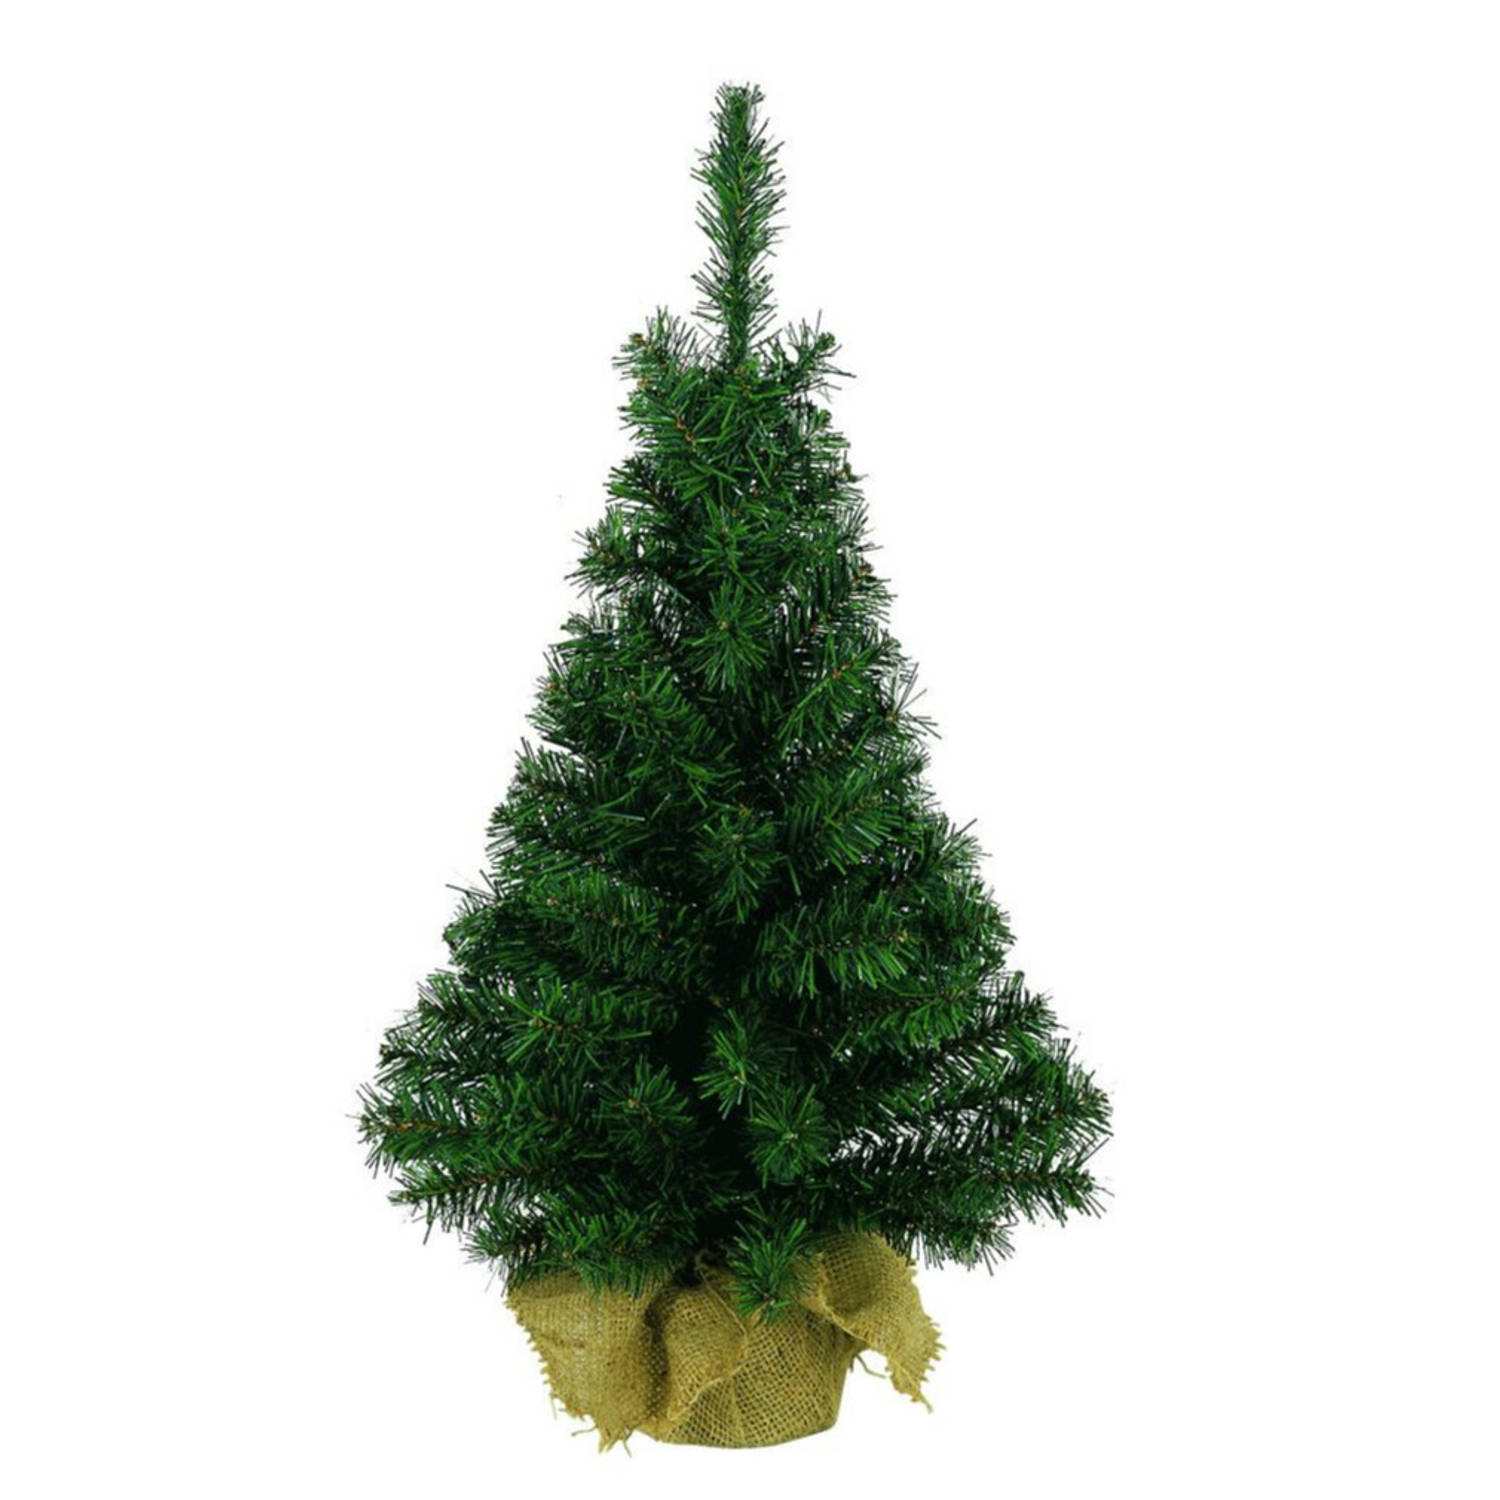 Groene kunst kerstboom-kerstboompje 90 cm met jute zak-kluit Kerstversieringen-kerstdecoraties